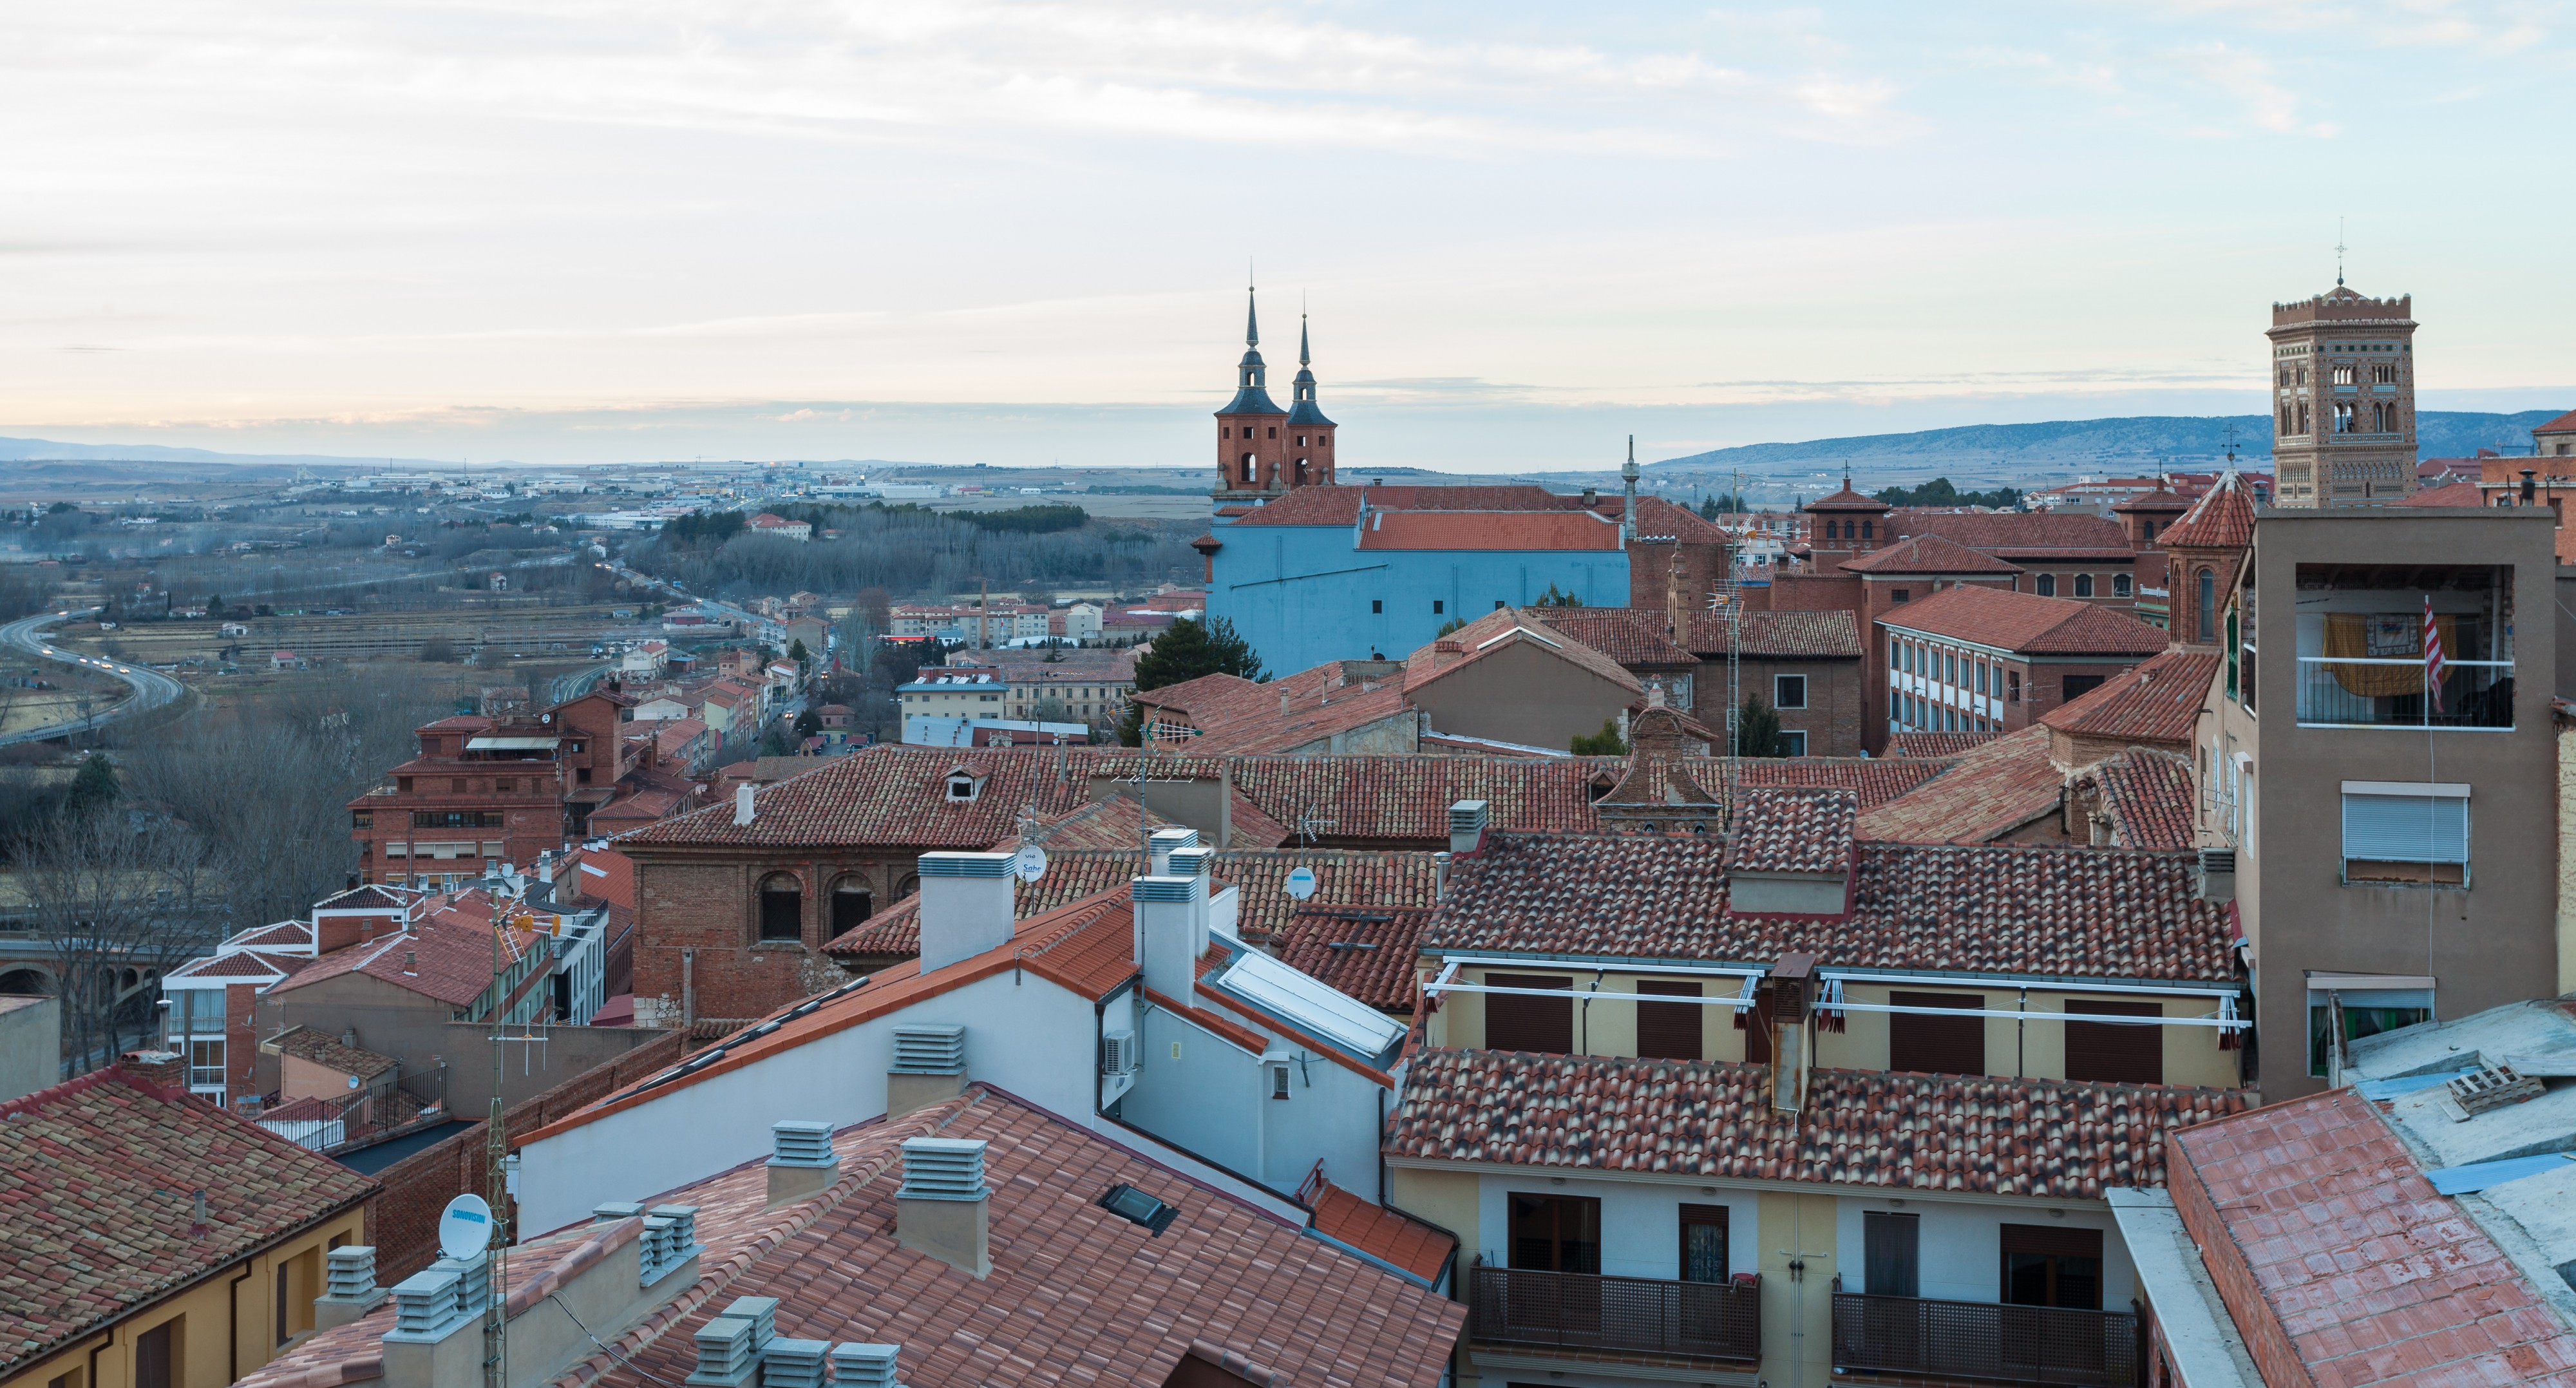 Vista de Teruel desde la torre de la iglesia del Salvador, España, 2014-01-10, DD 80